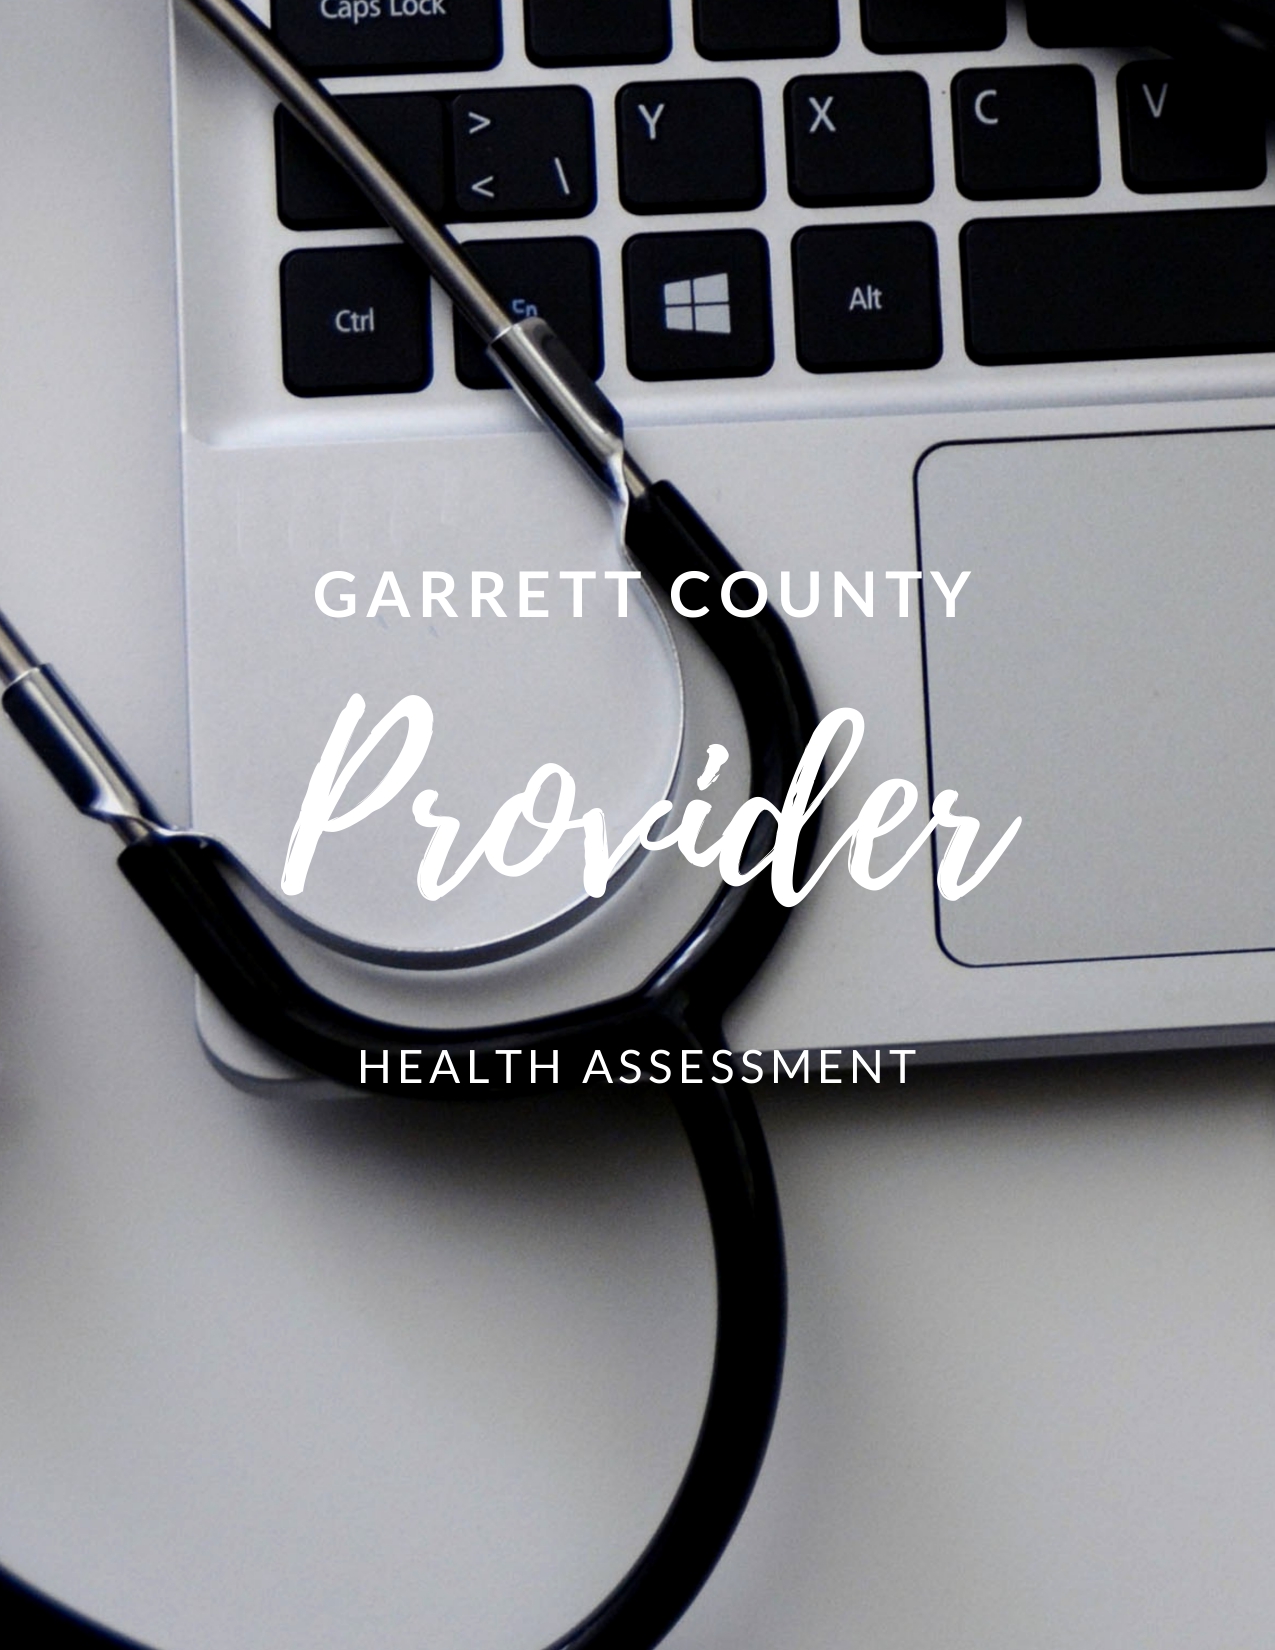 Garrett County Provider Health Assessment